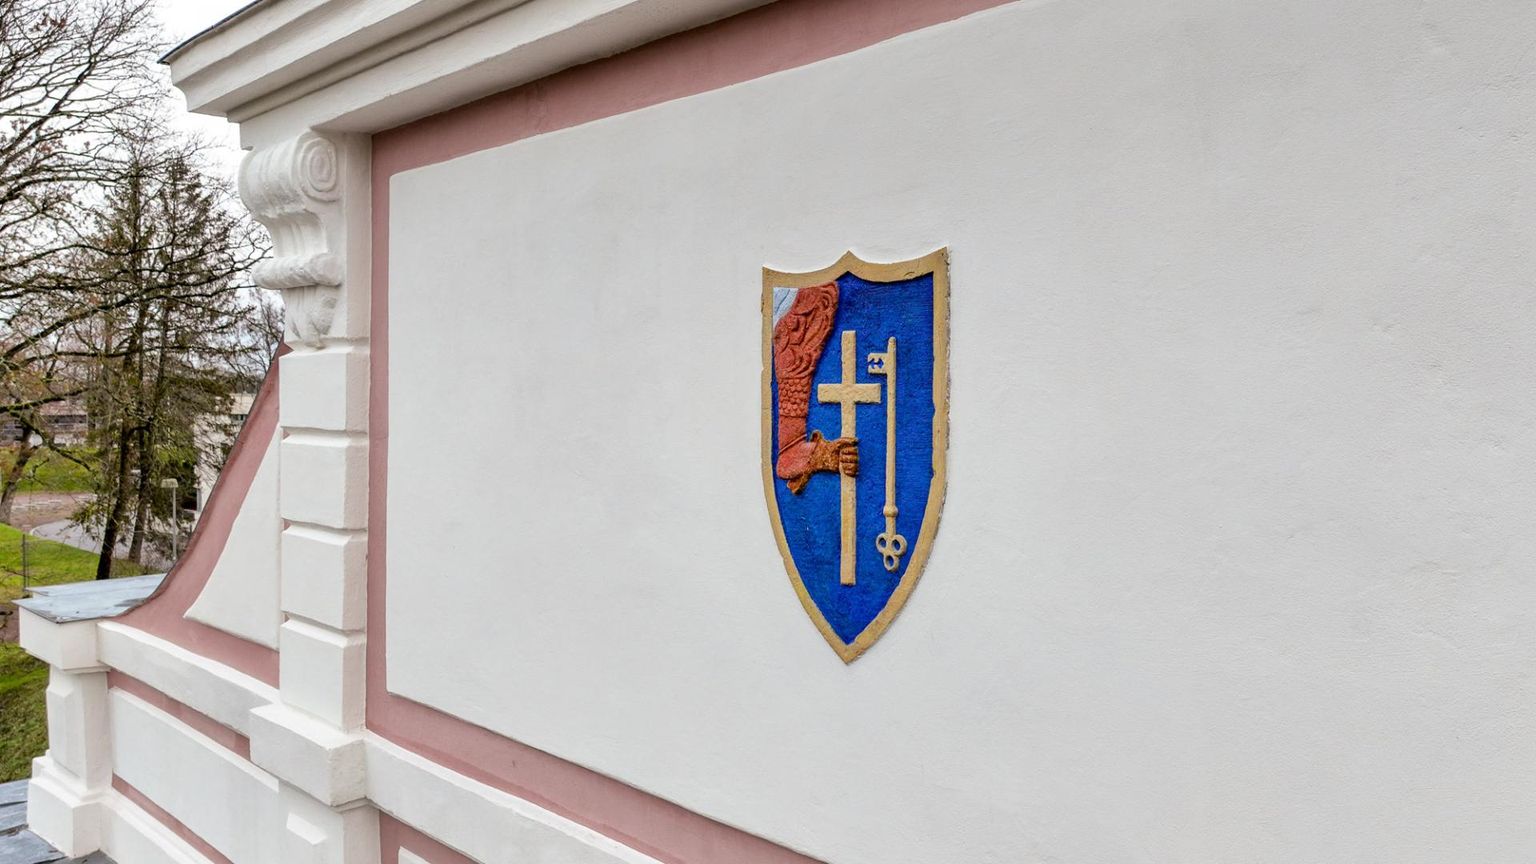 Svea Volmeri uurimistöö Pärnus Tallinna värava renoveerimisel paljastas, et sellel asuvat linnavappi on aastakümnete jooksul valesti värvitud.